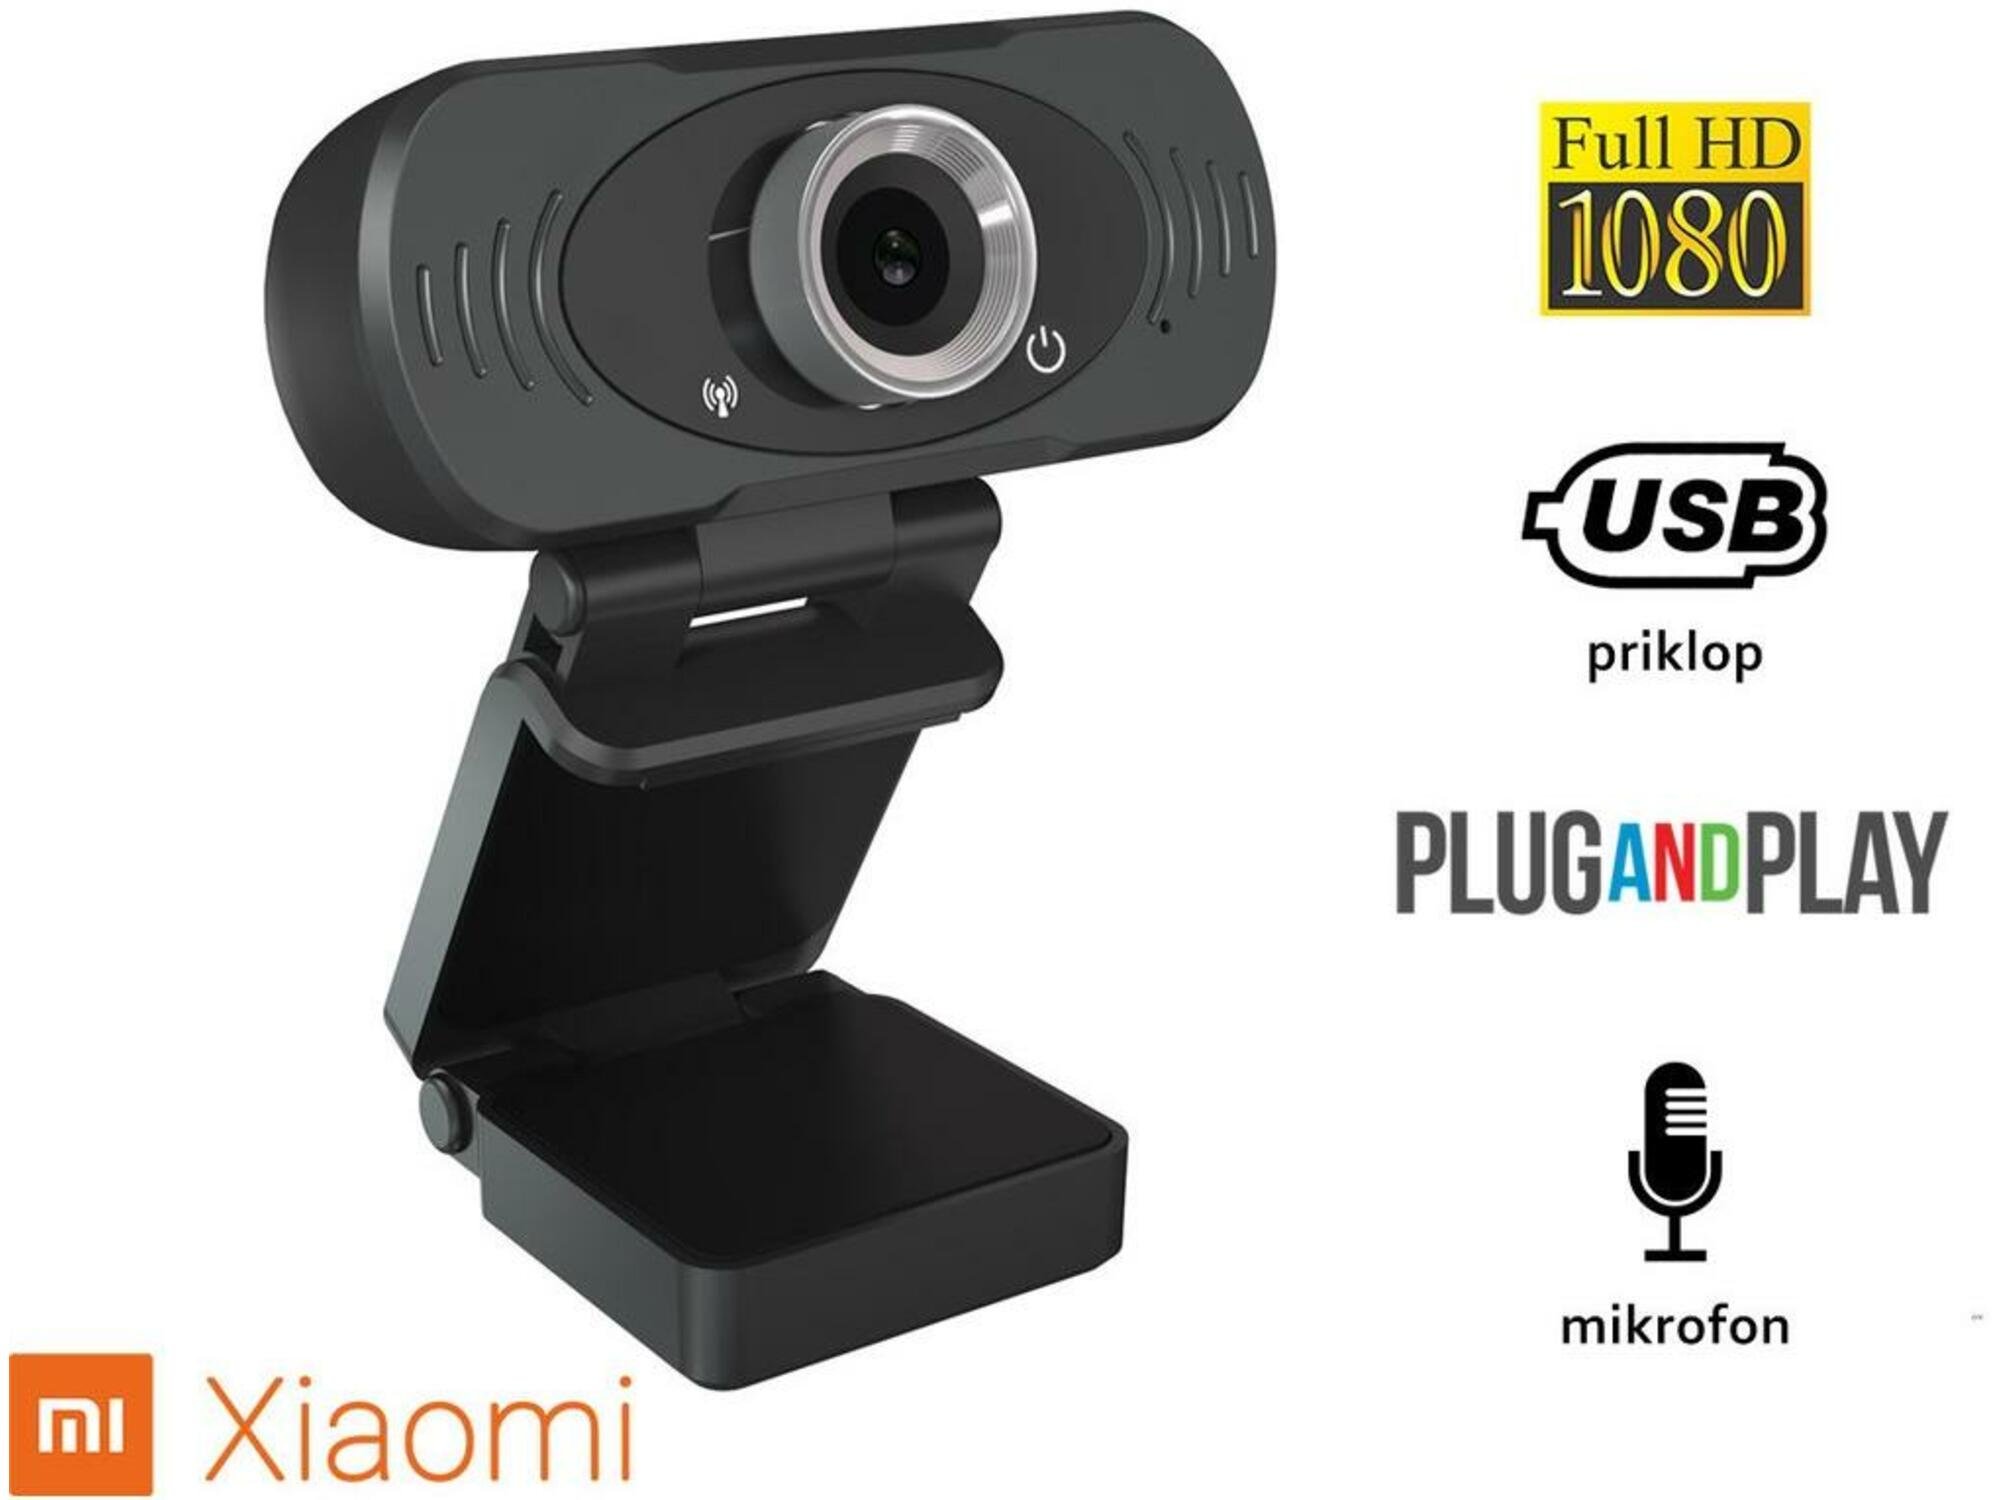 XIAOMI spletna kamera  IMILAB, model W88, USB2.0, 1080p Full HD